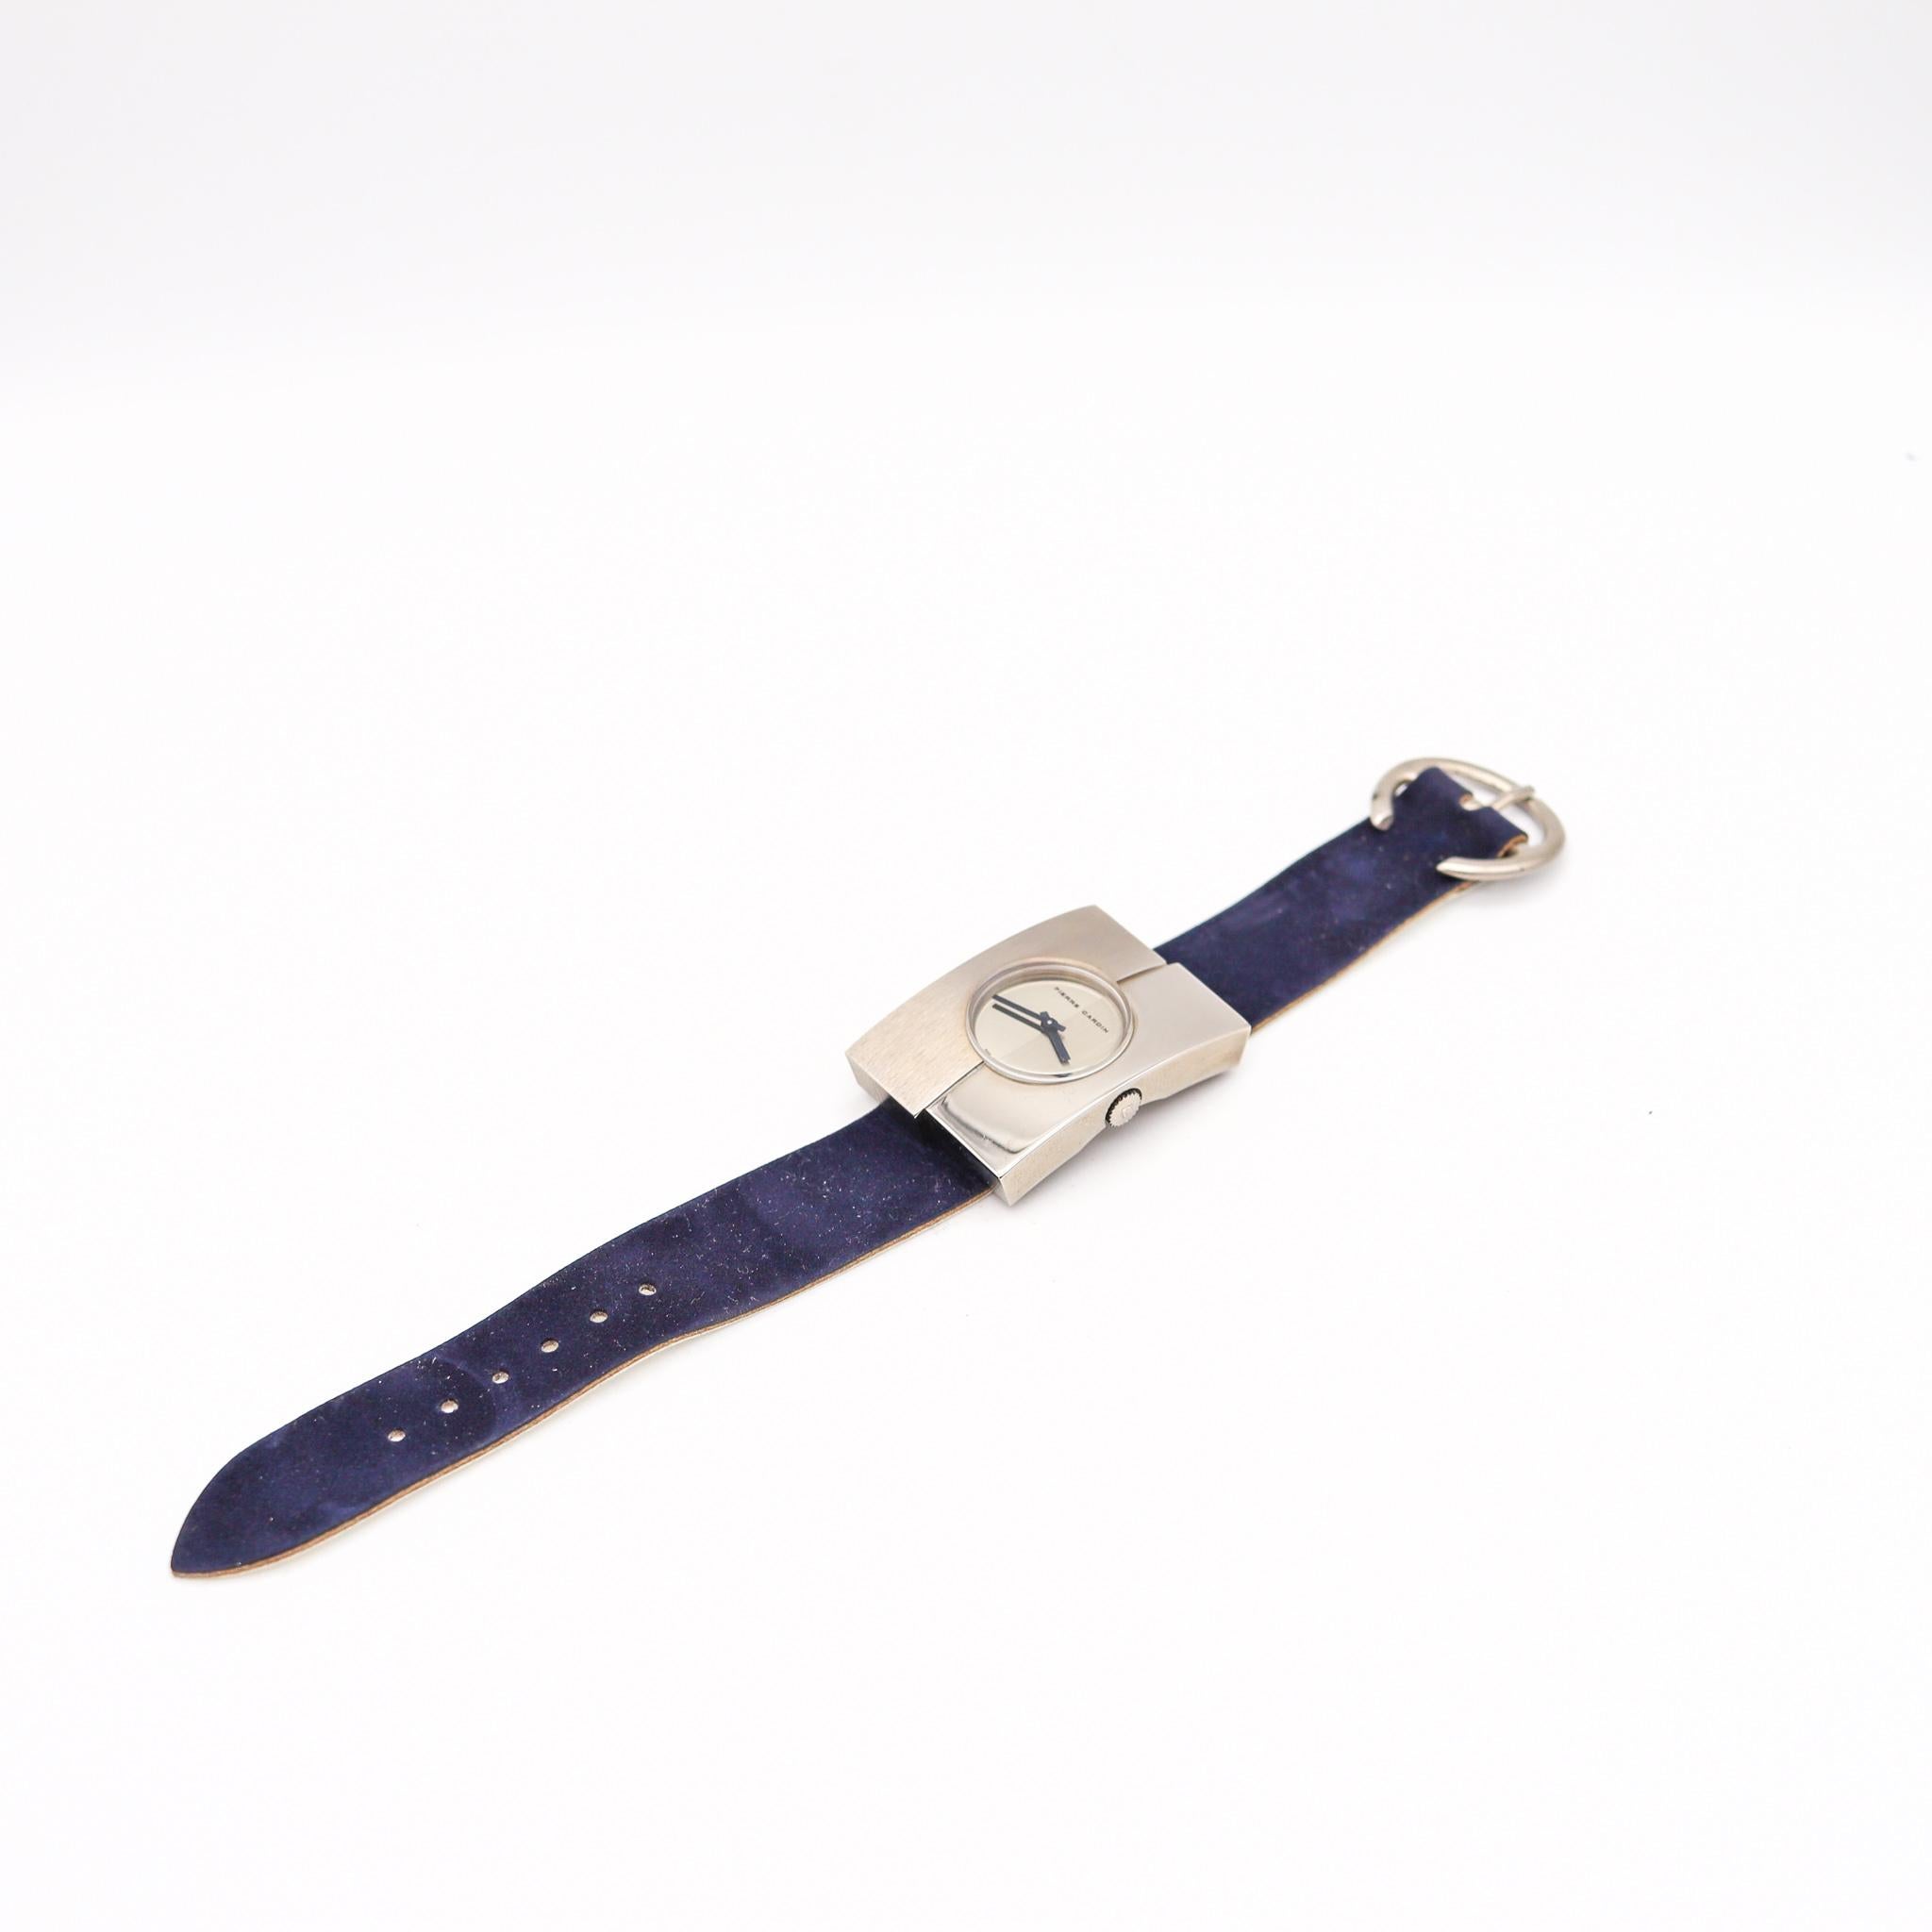 Montre-bracelet Jaeger-LeCoultre PC115 conçue par Pierre Cardin.

Fabuleuse montre rétro, conçue en France par le couturier Pierre Cardin, en 1971. Cette belle et rare montre est le modèle Pierre Cardin PC115, et a été conçu avec une forme